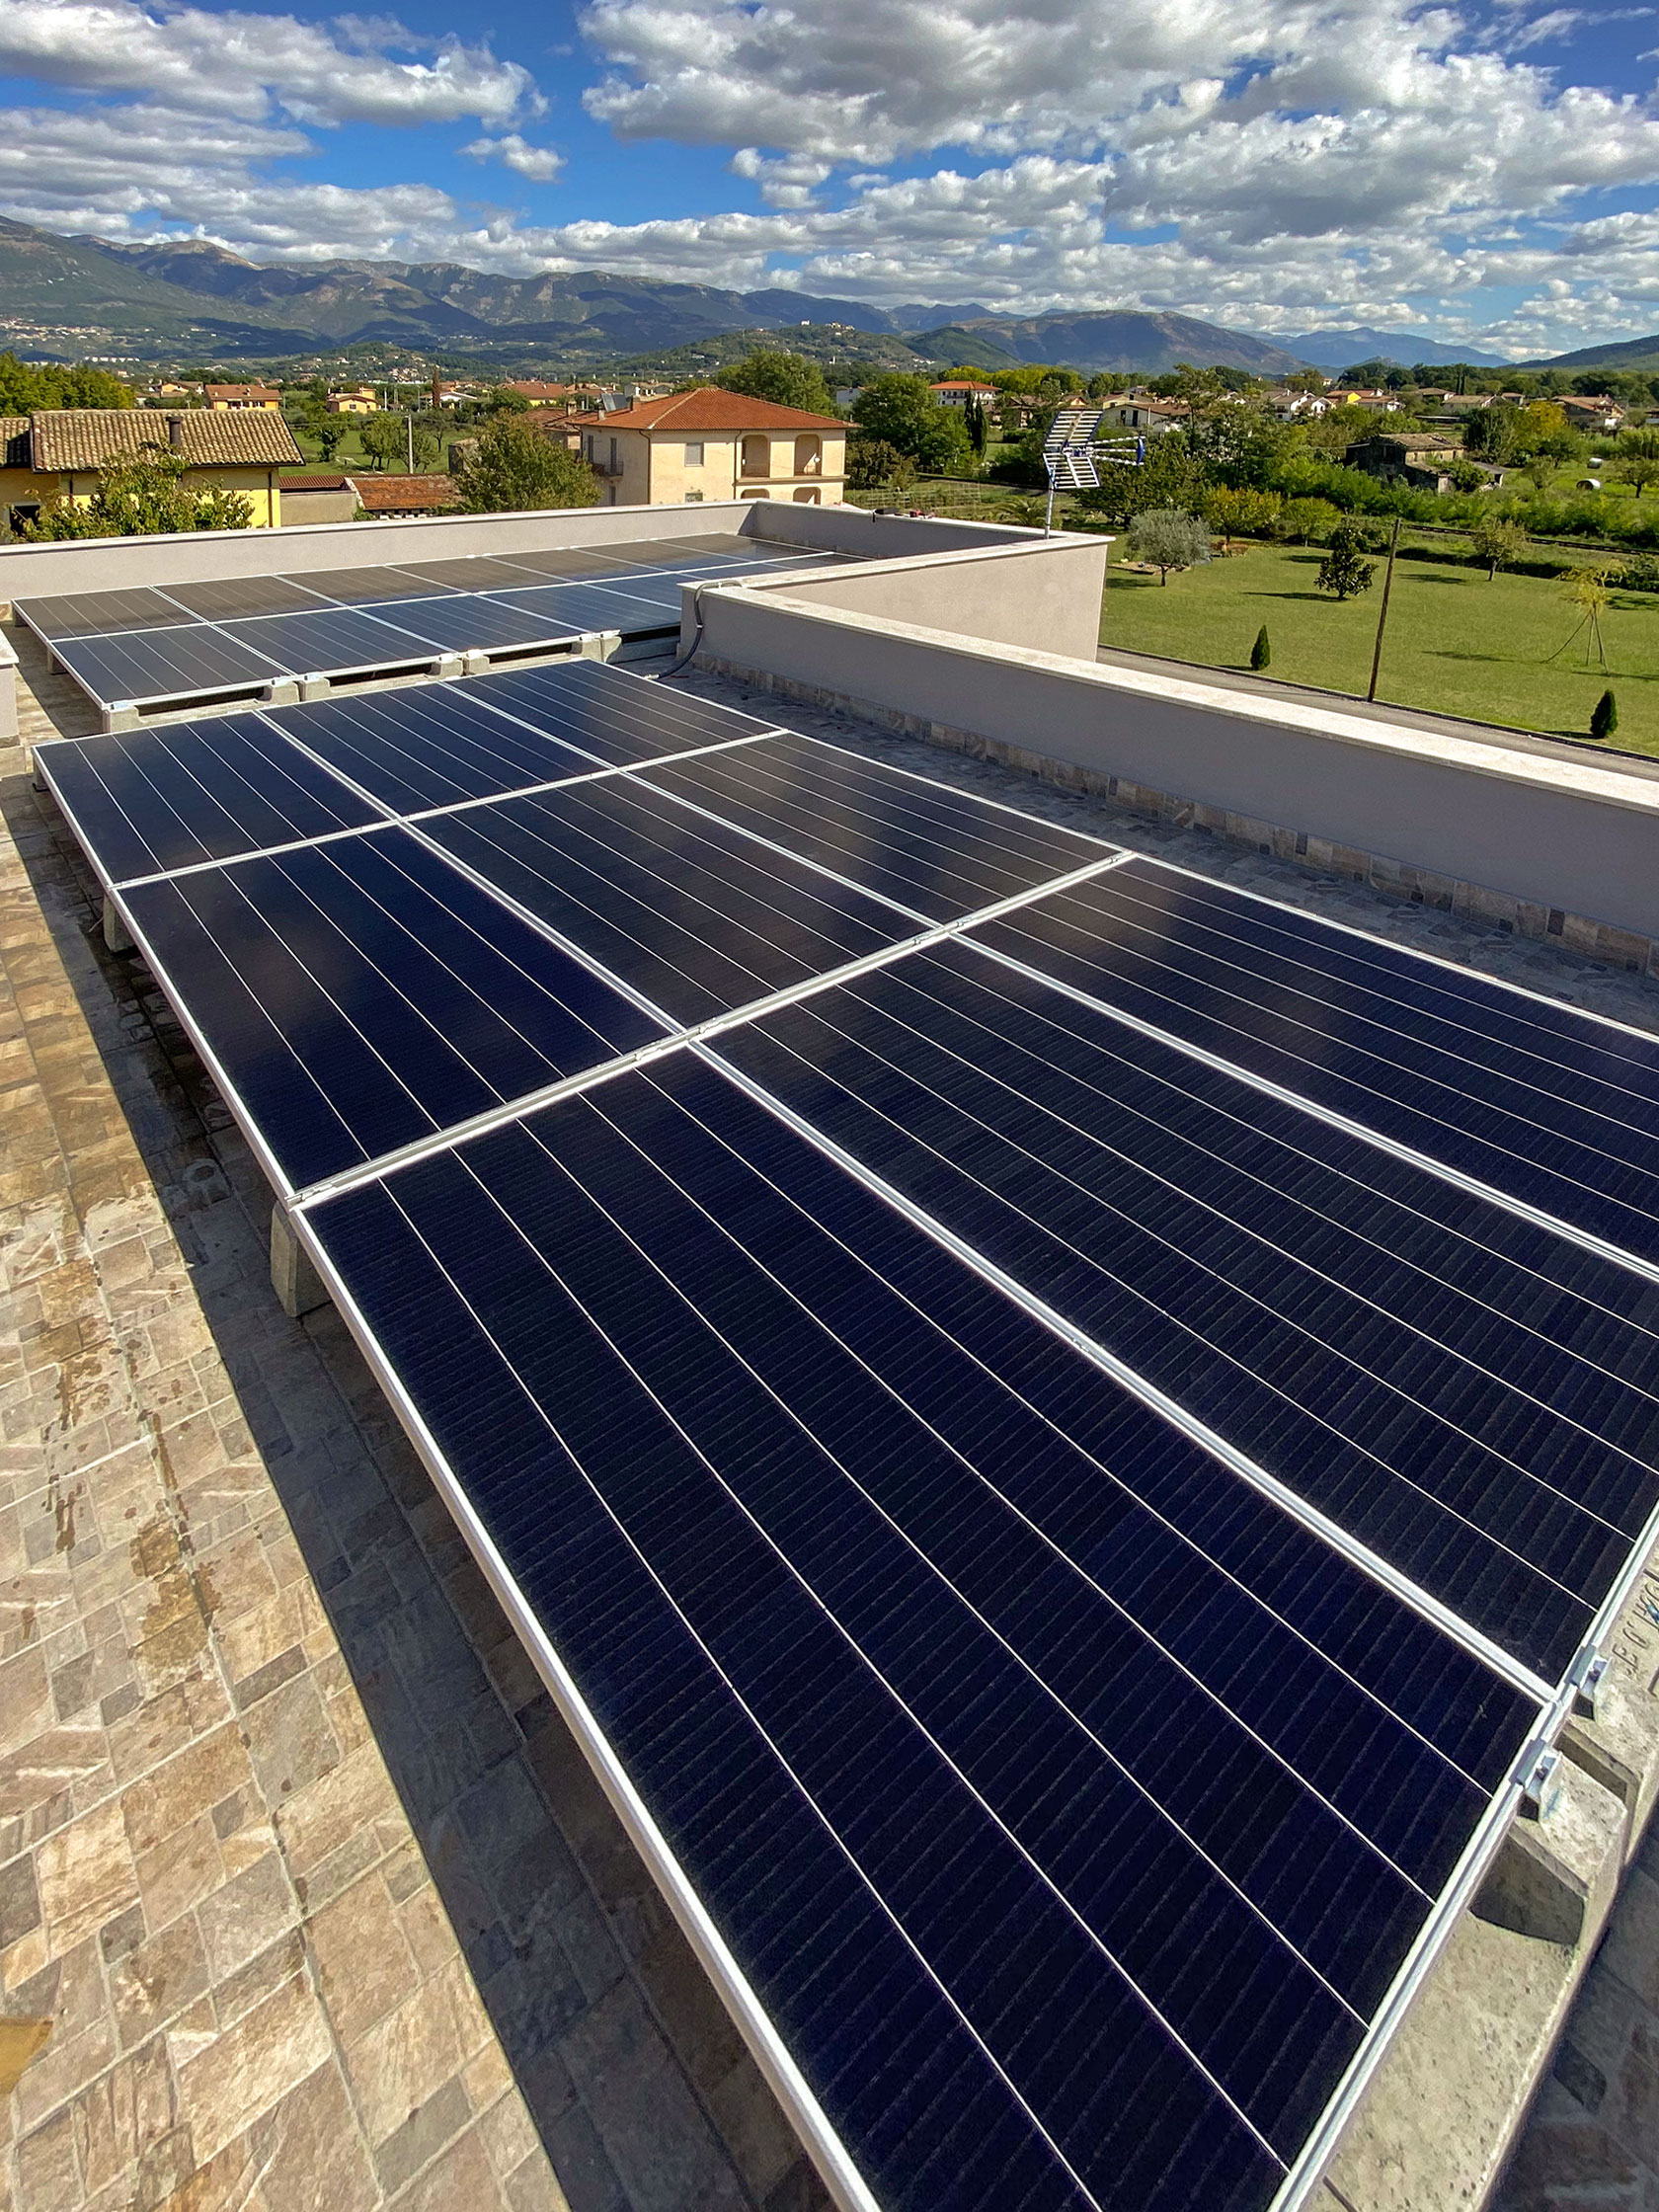 Impianto Fotovoltaico 9,43 kWp SunPower installato a Sora, Frosinone dall'azienda DMT Solar installatore certificato Tesla Powerwall e Sunpower Maxeon impianto fotovoltaico in Campania, Lazio, Molise, Lombardia, Piemonte, ITALIA